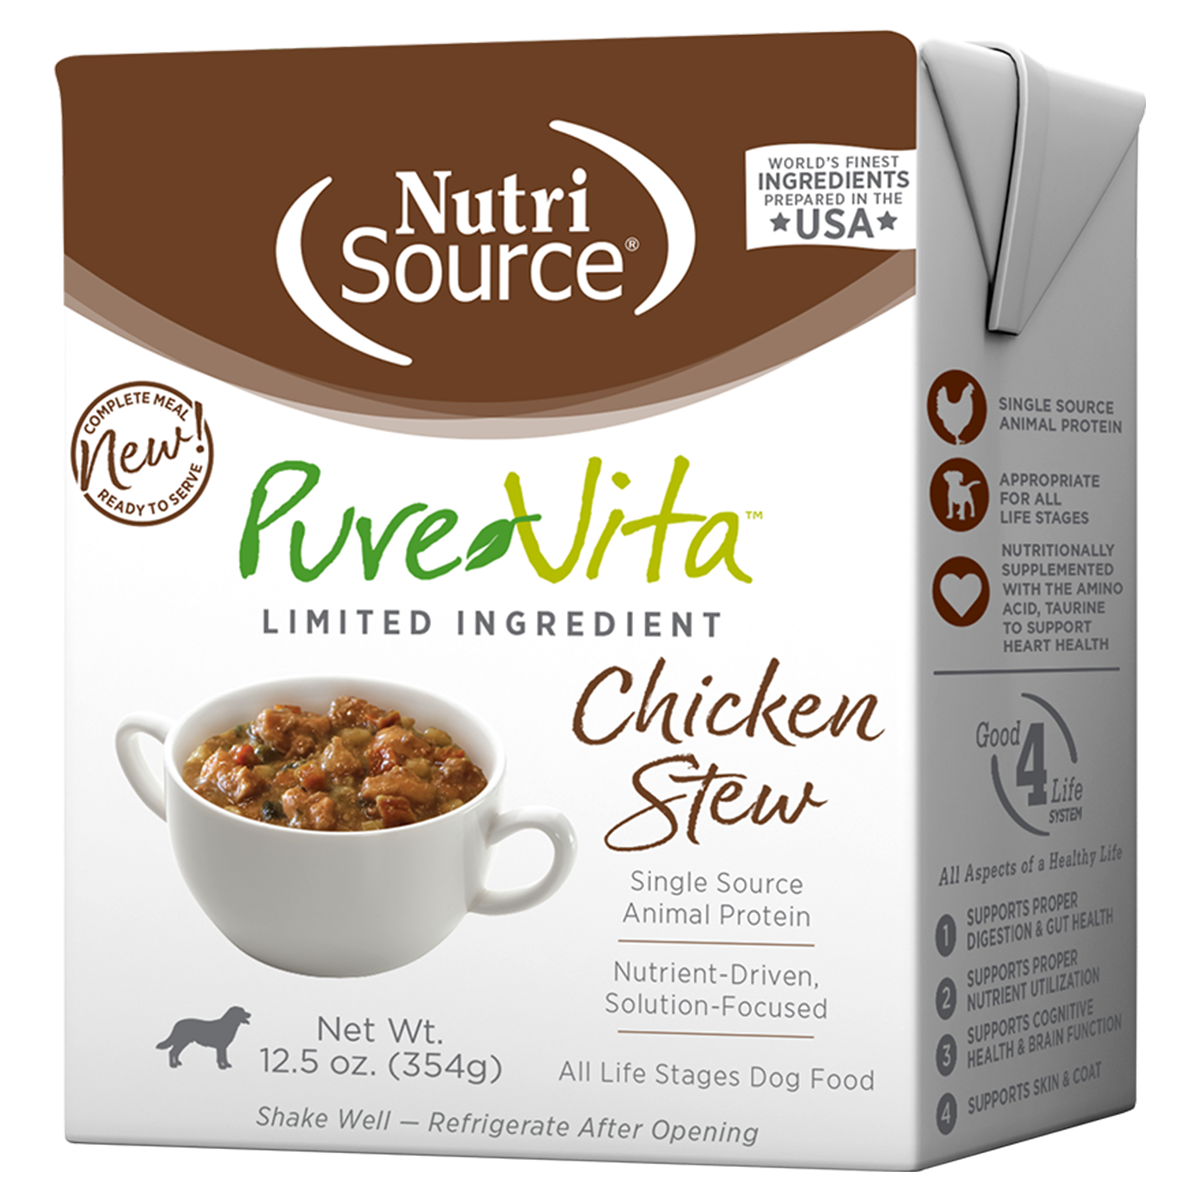 PureVita Limited Ingredient Wet Dog Food - Chicken Stew